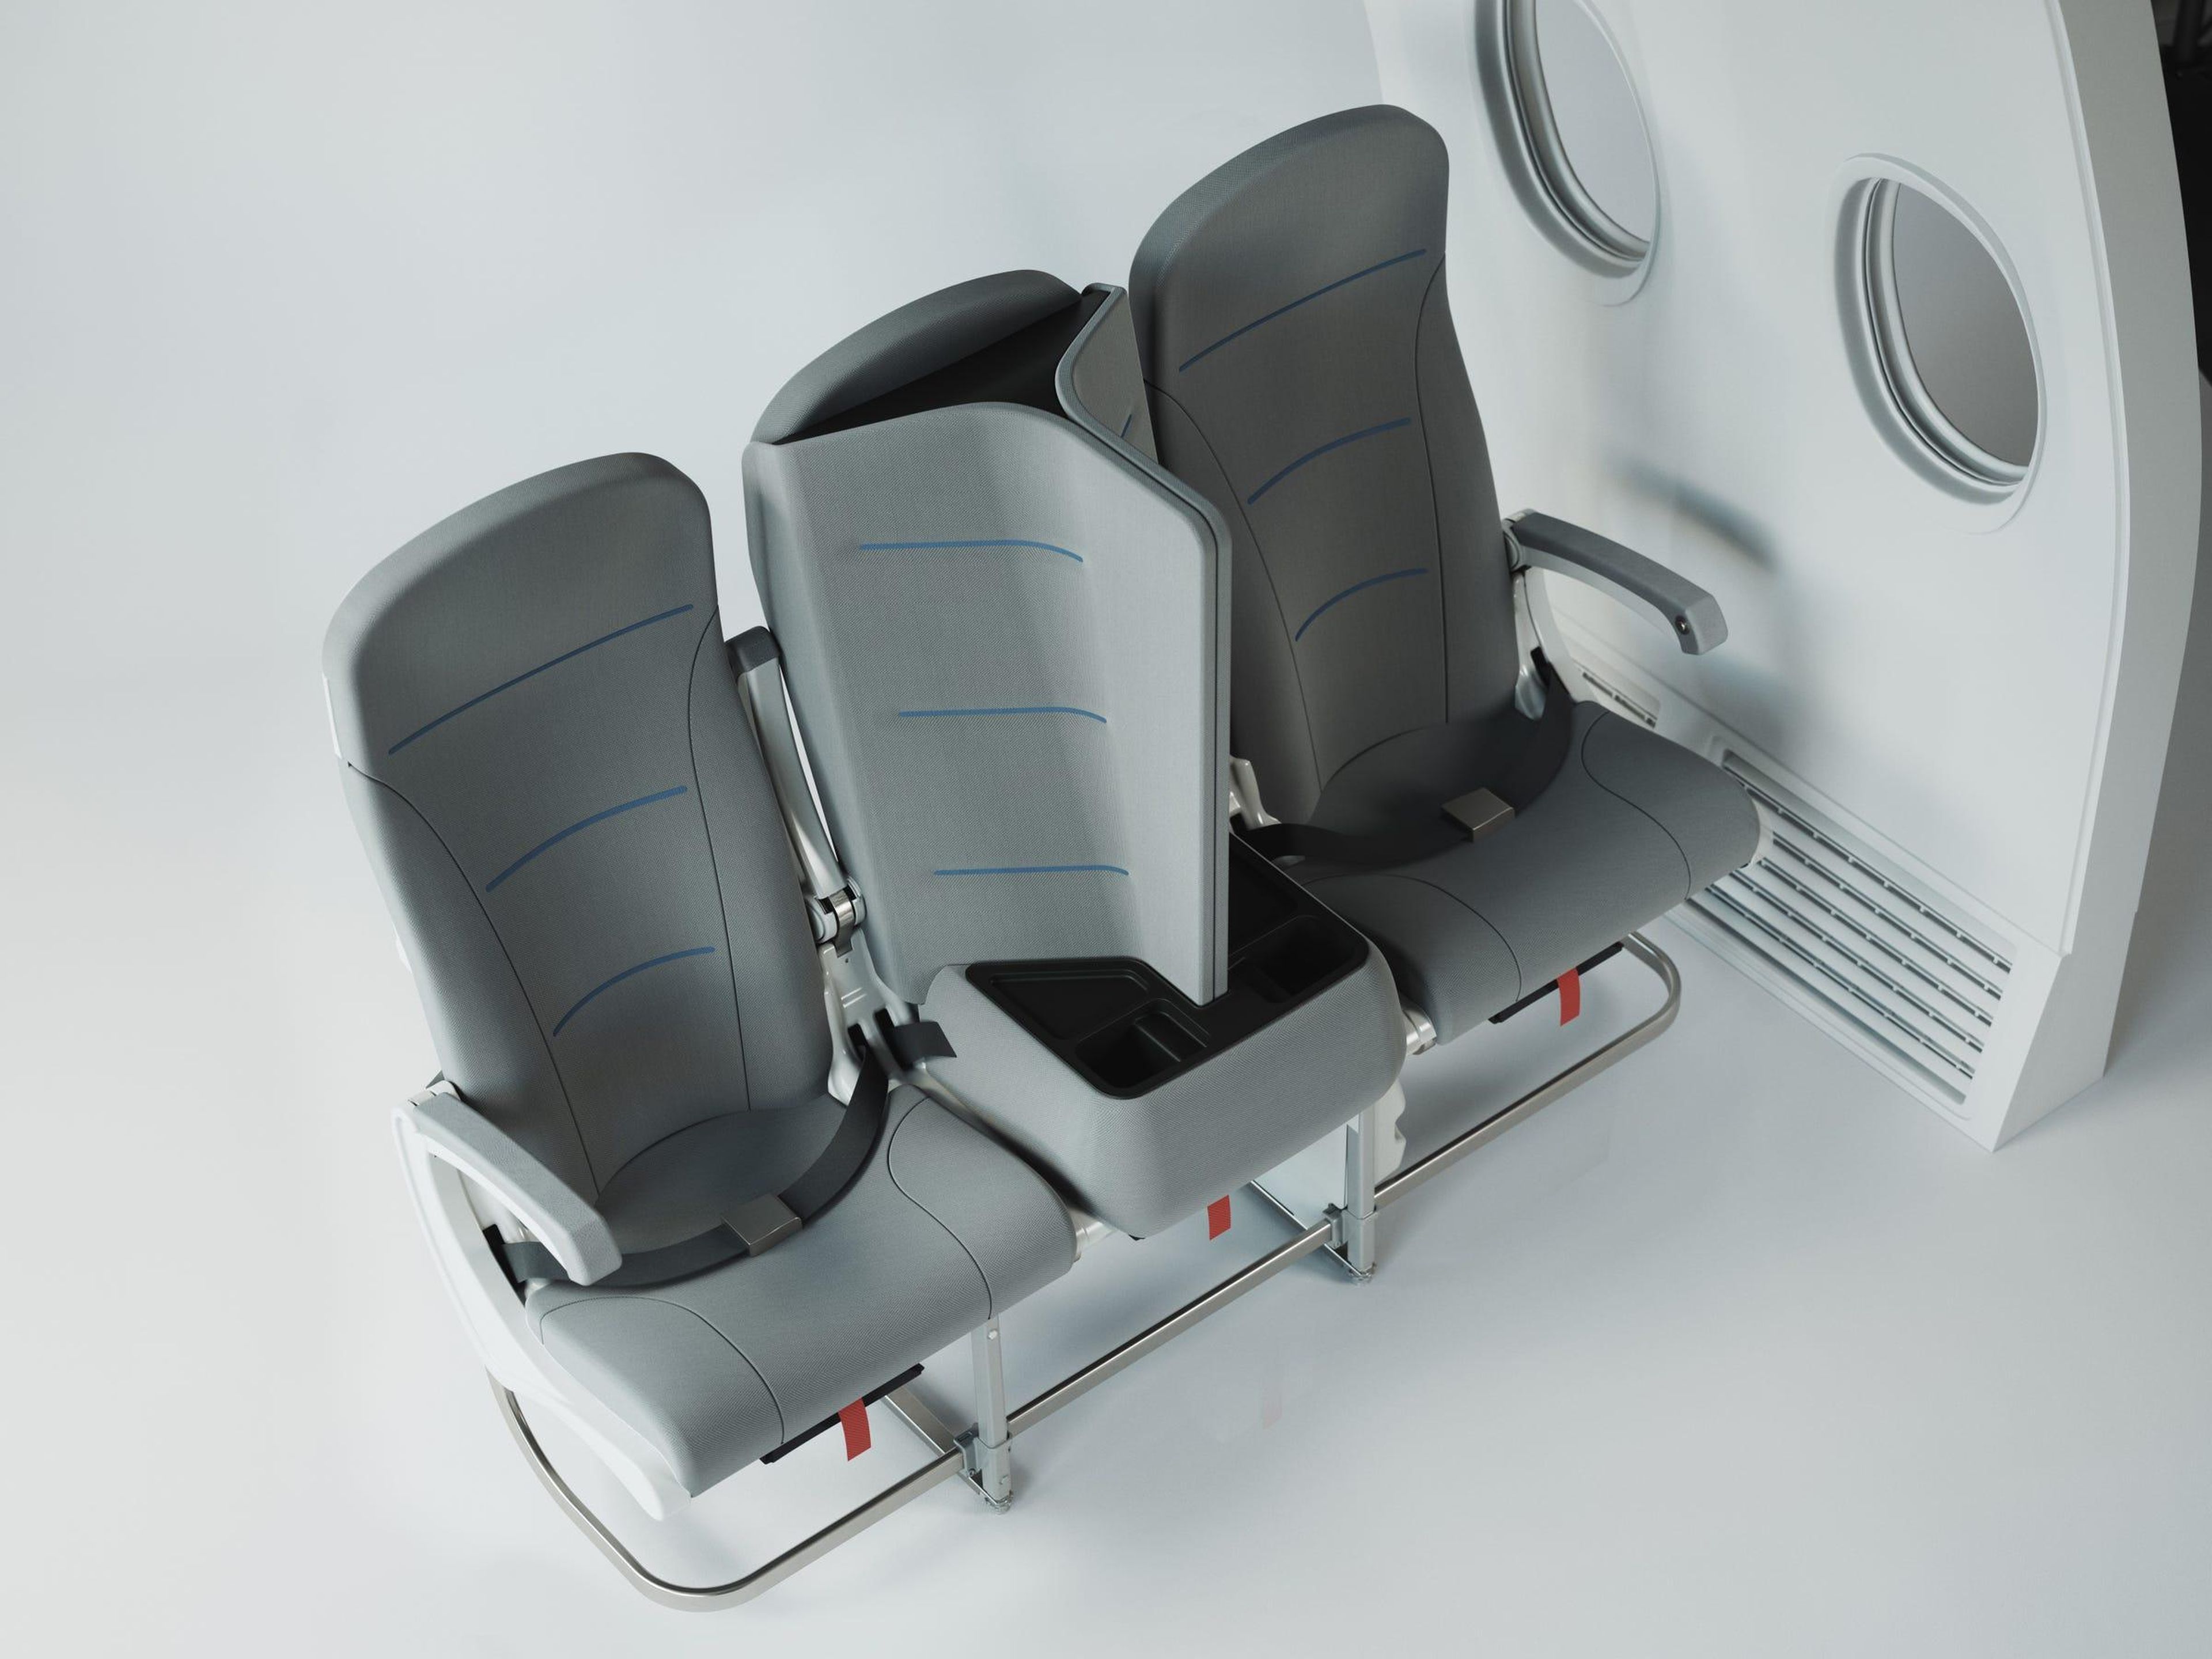 Los asientos Interspace Lite fueron diseñados originalmente para que dormir fuera más cómodo.